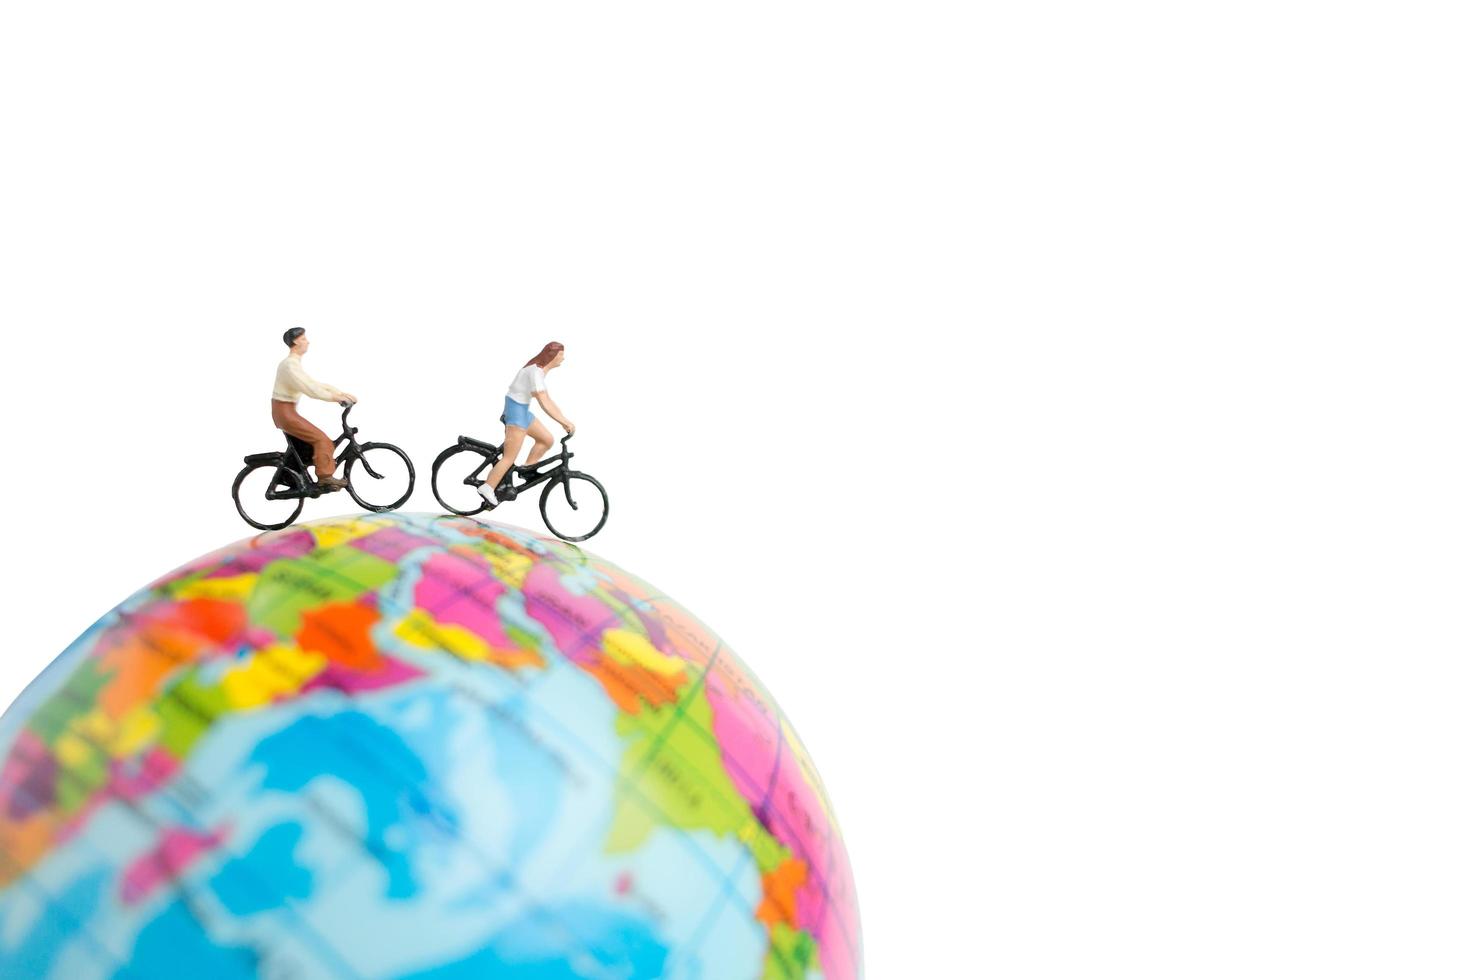 viajantes em miniatura com bicicletas em um globo em um fundo branco foto